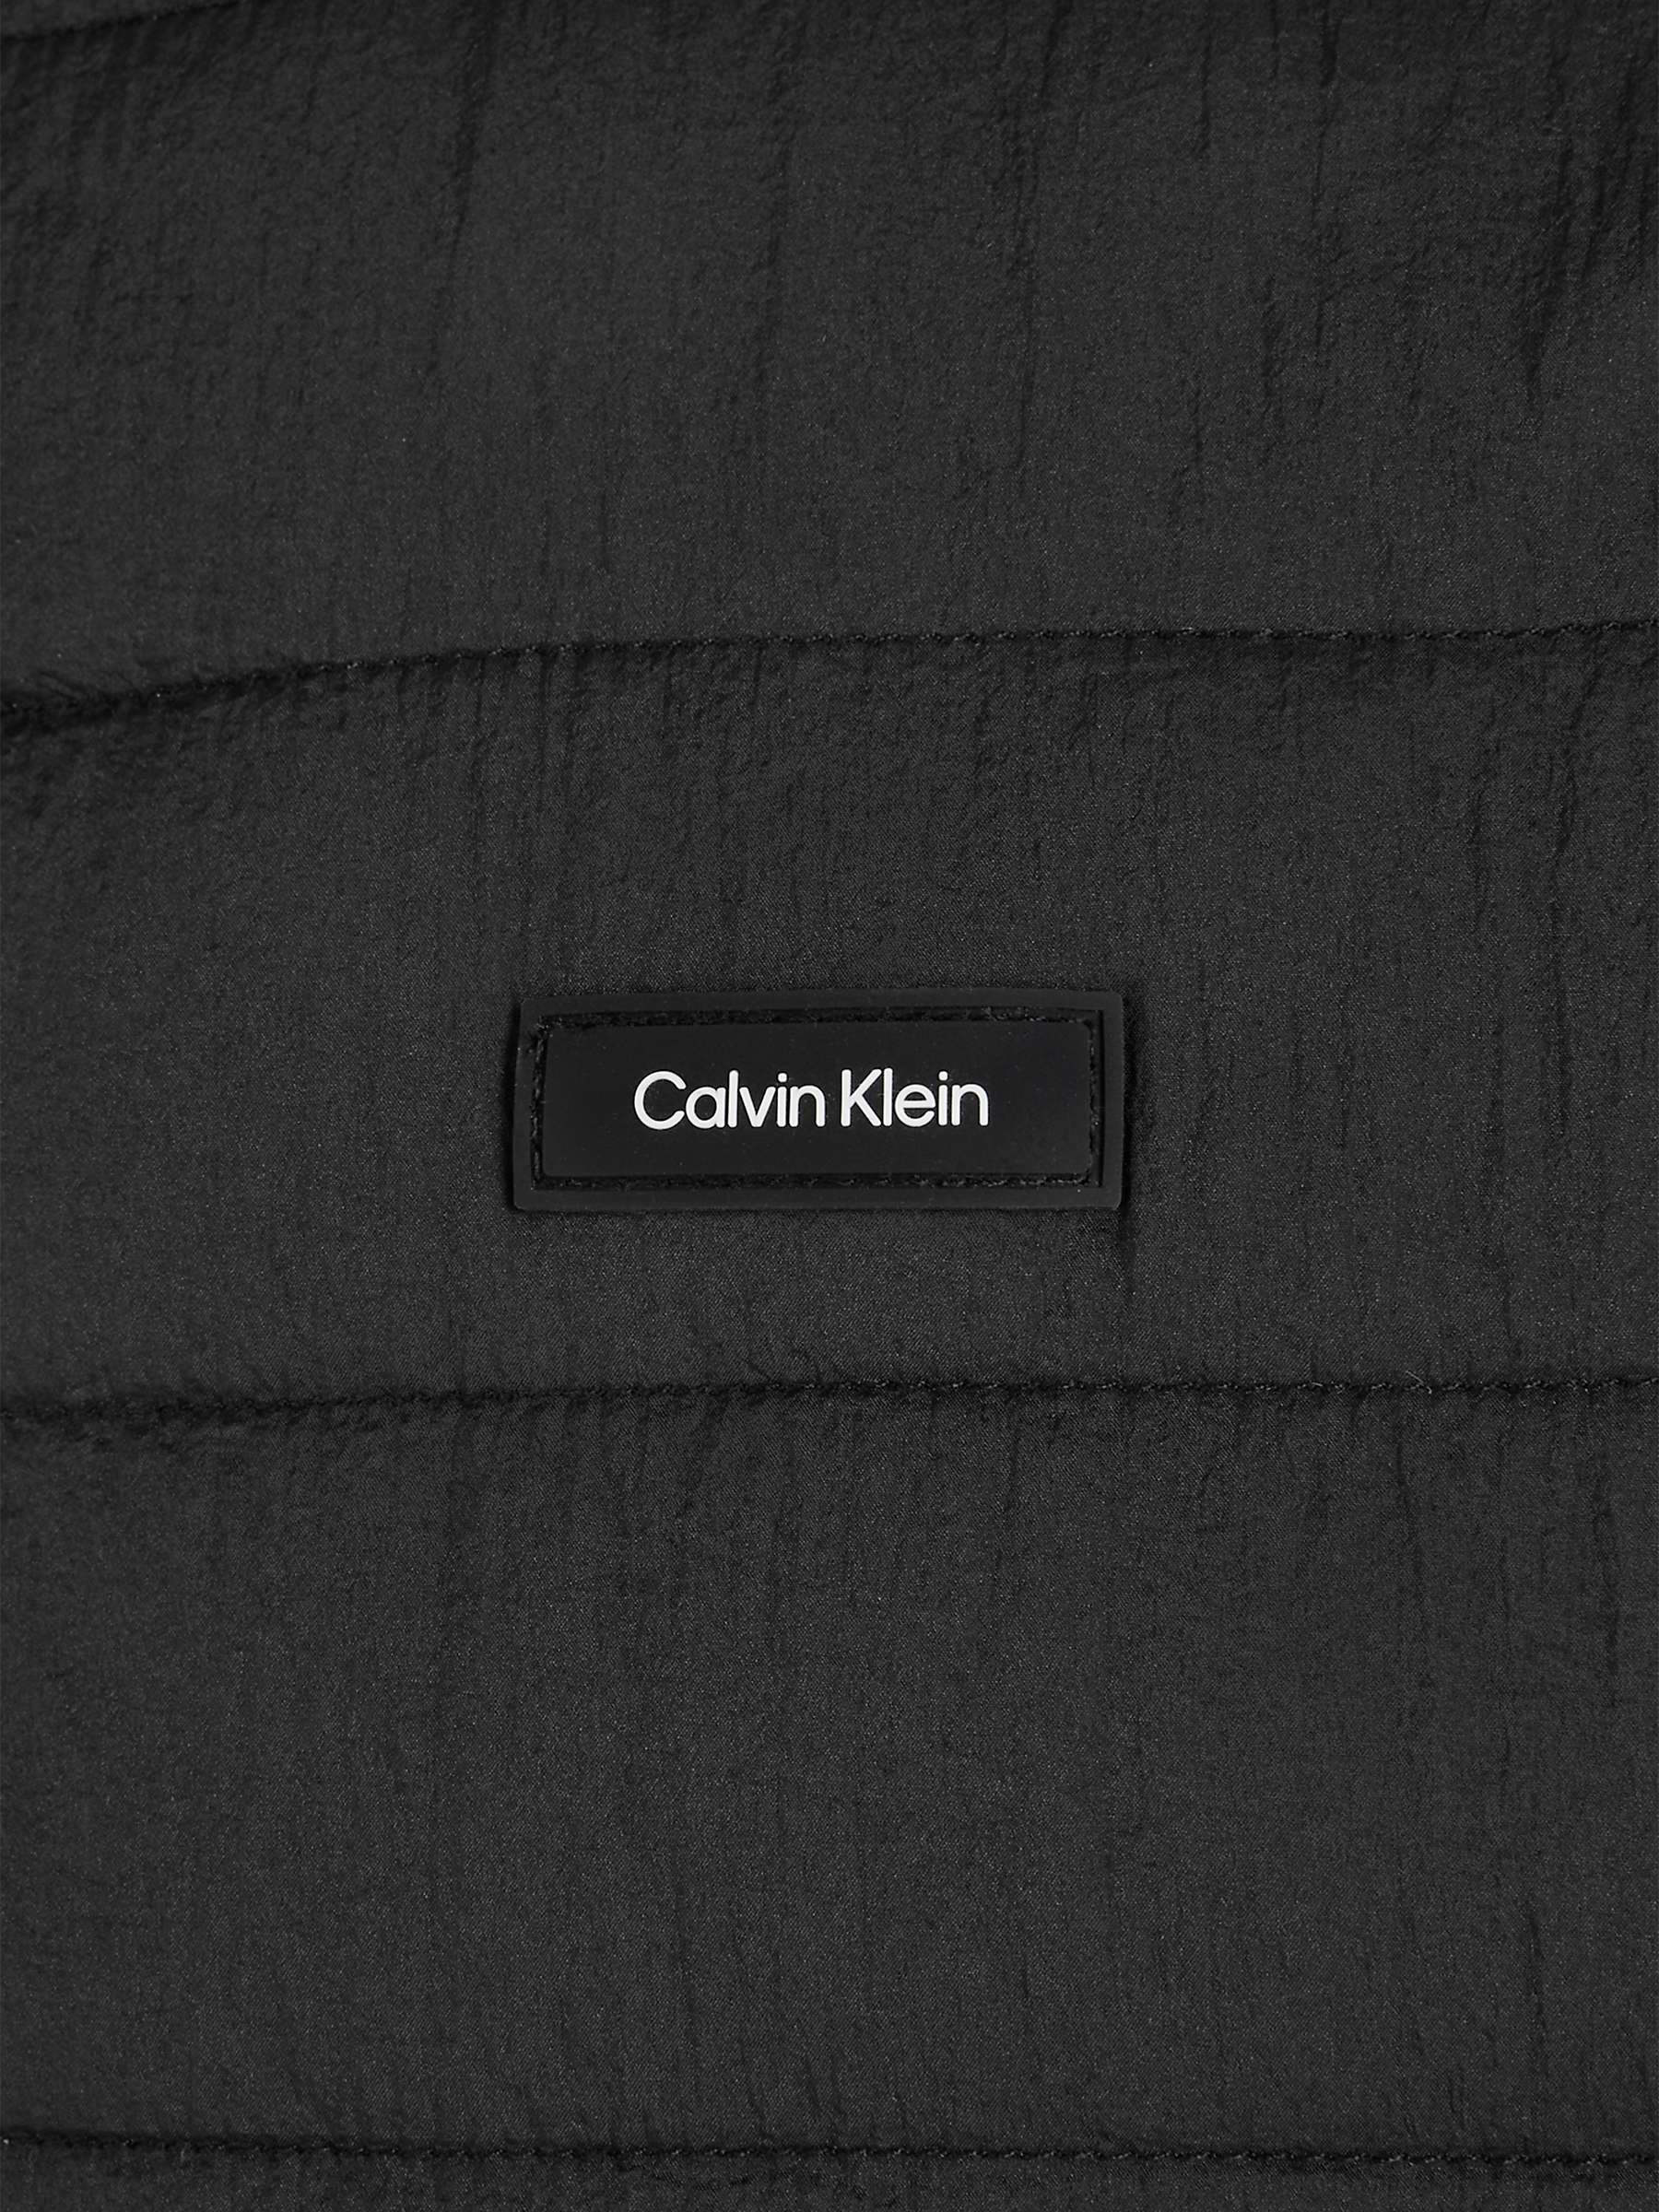 Buy Calvin Klein Crinkle Quilt Gilet, Black Online at johnlewis.com